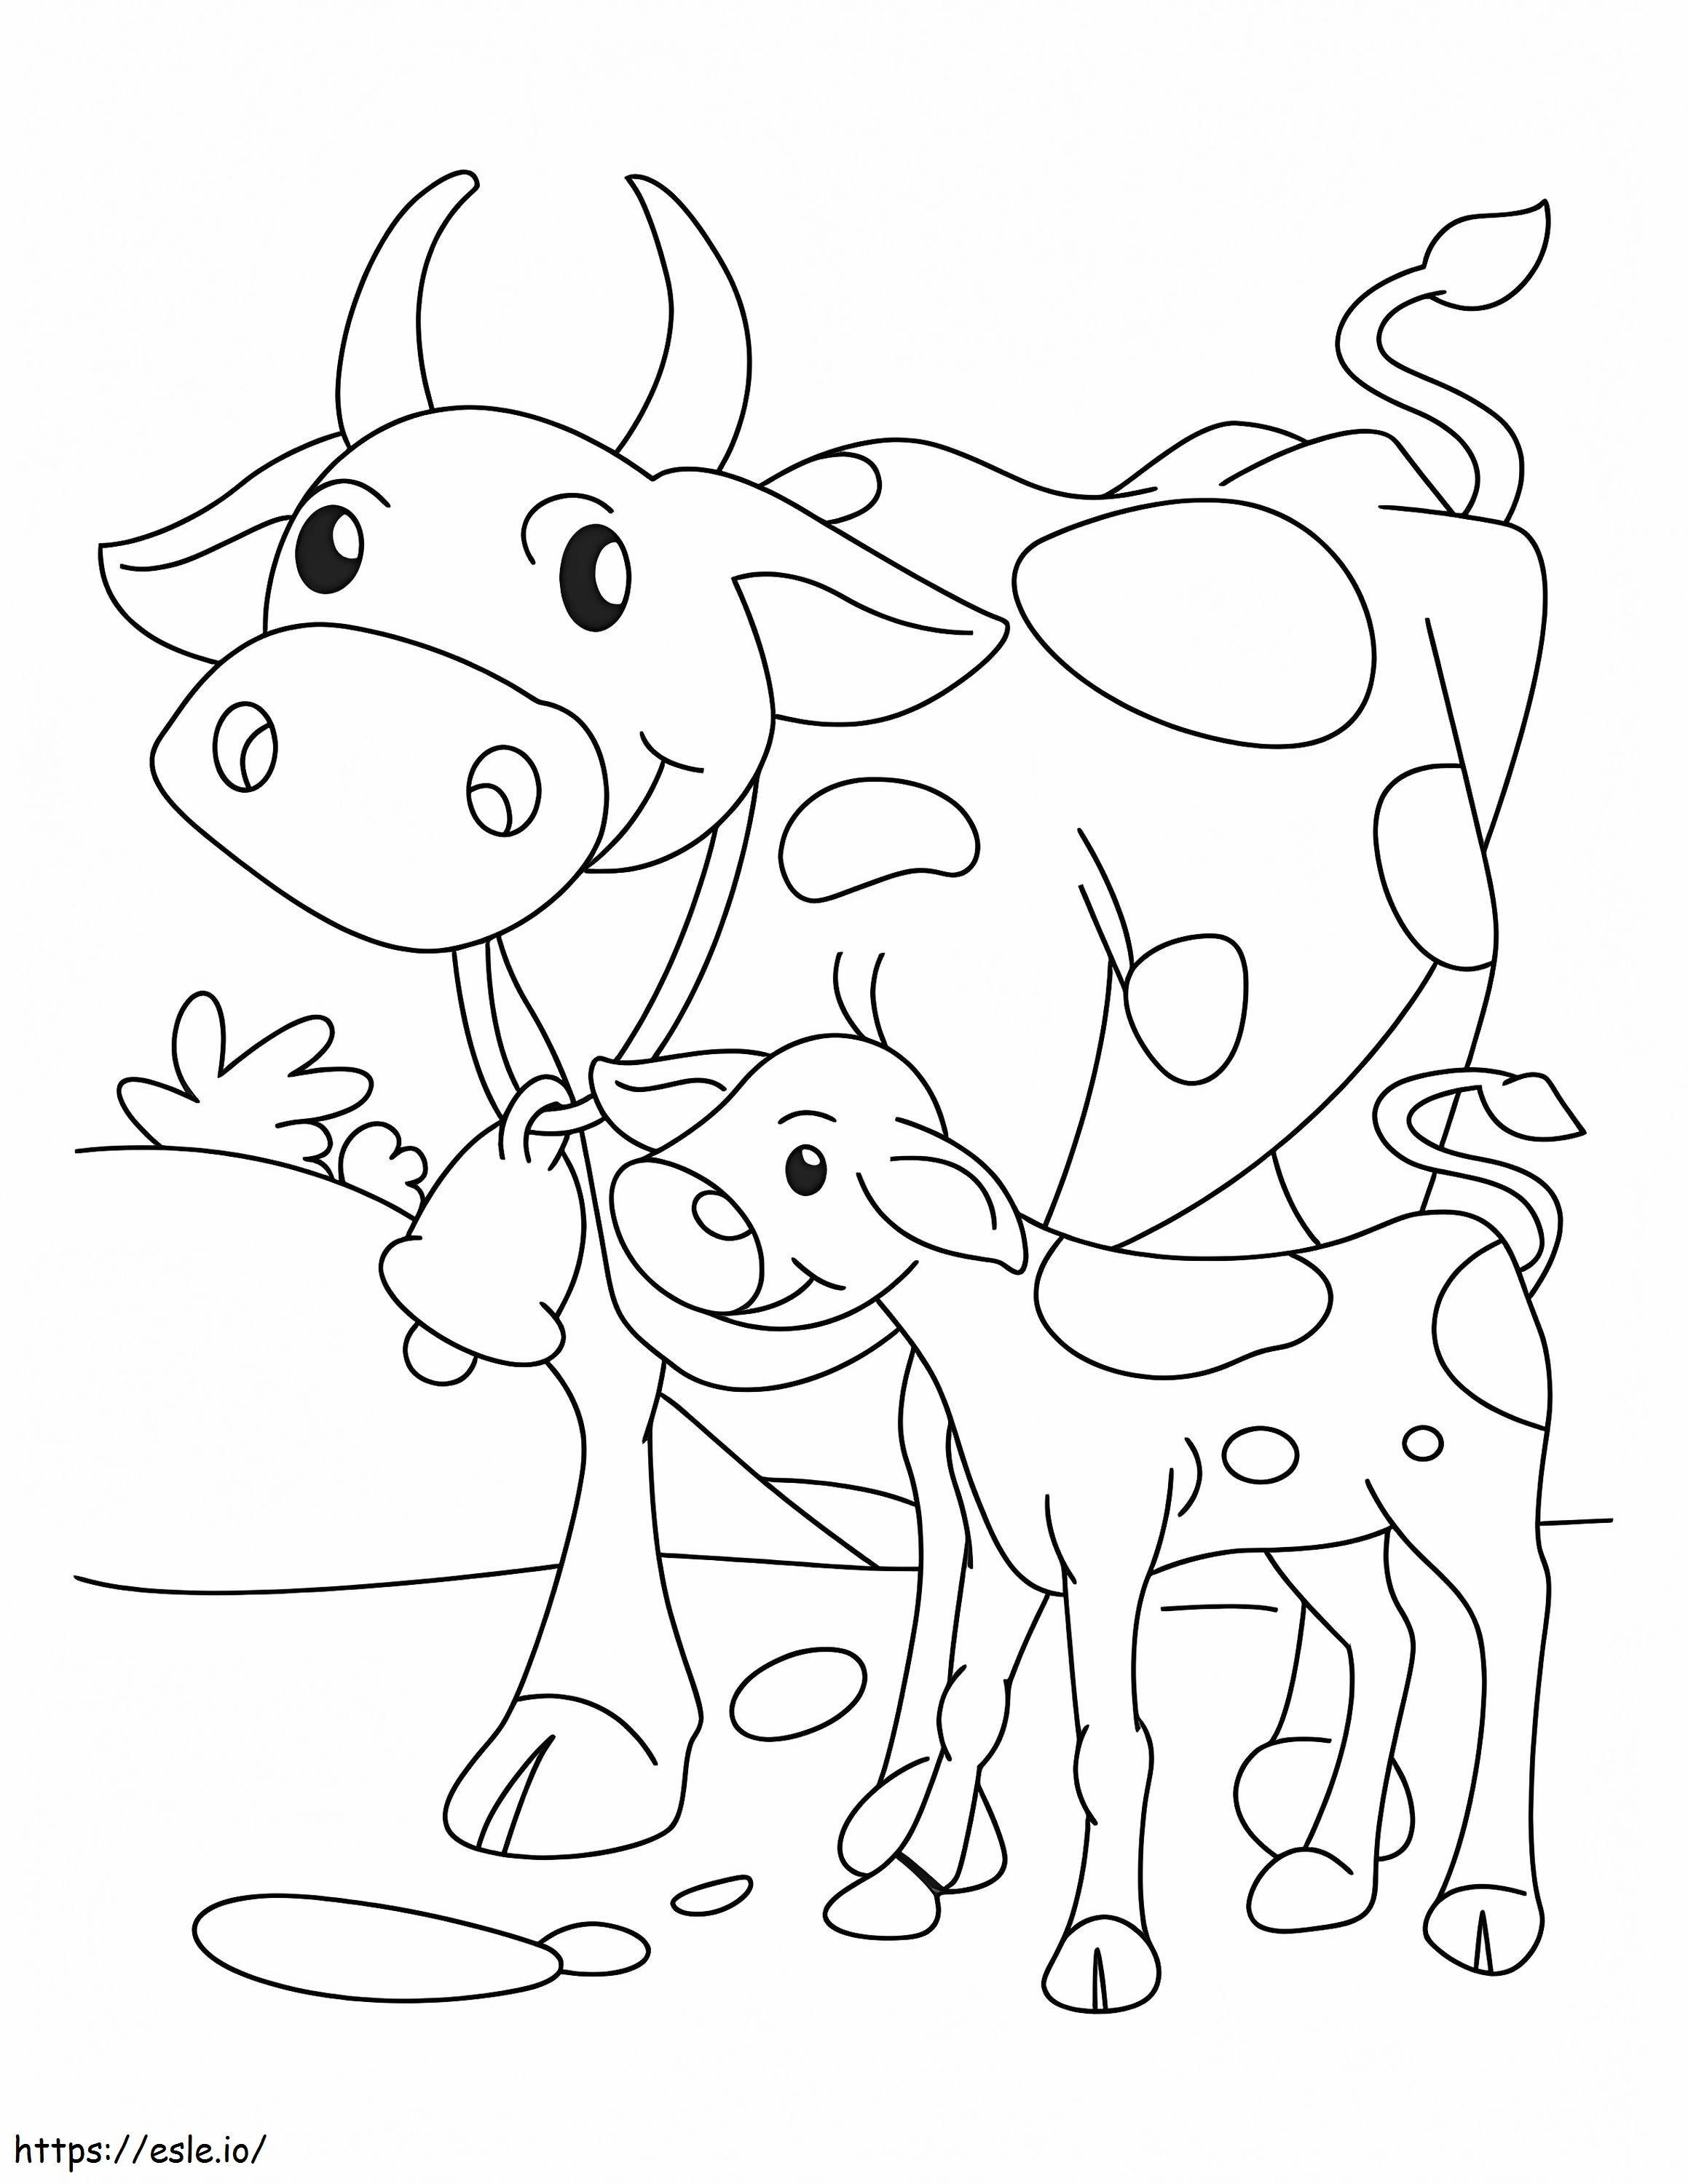 Kuh und Kalb ausmalbilder